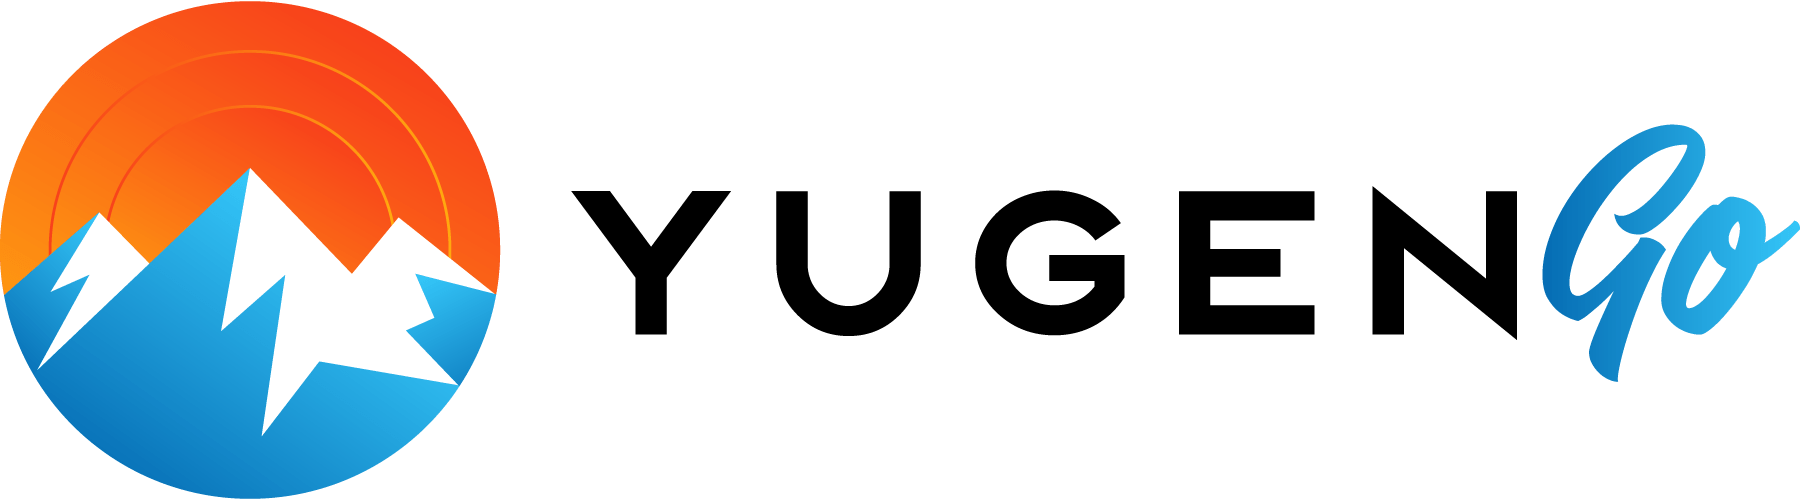 yugengo.com